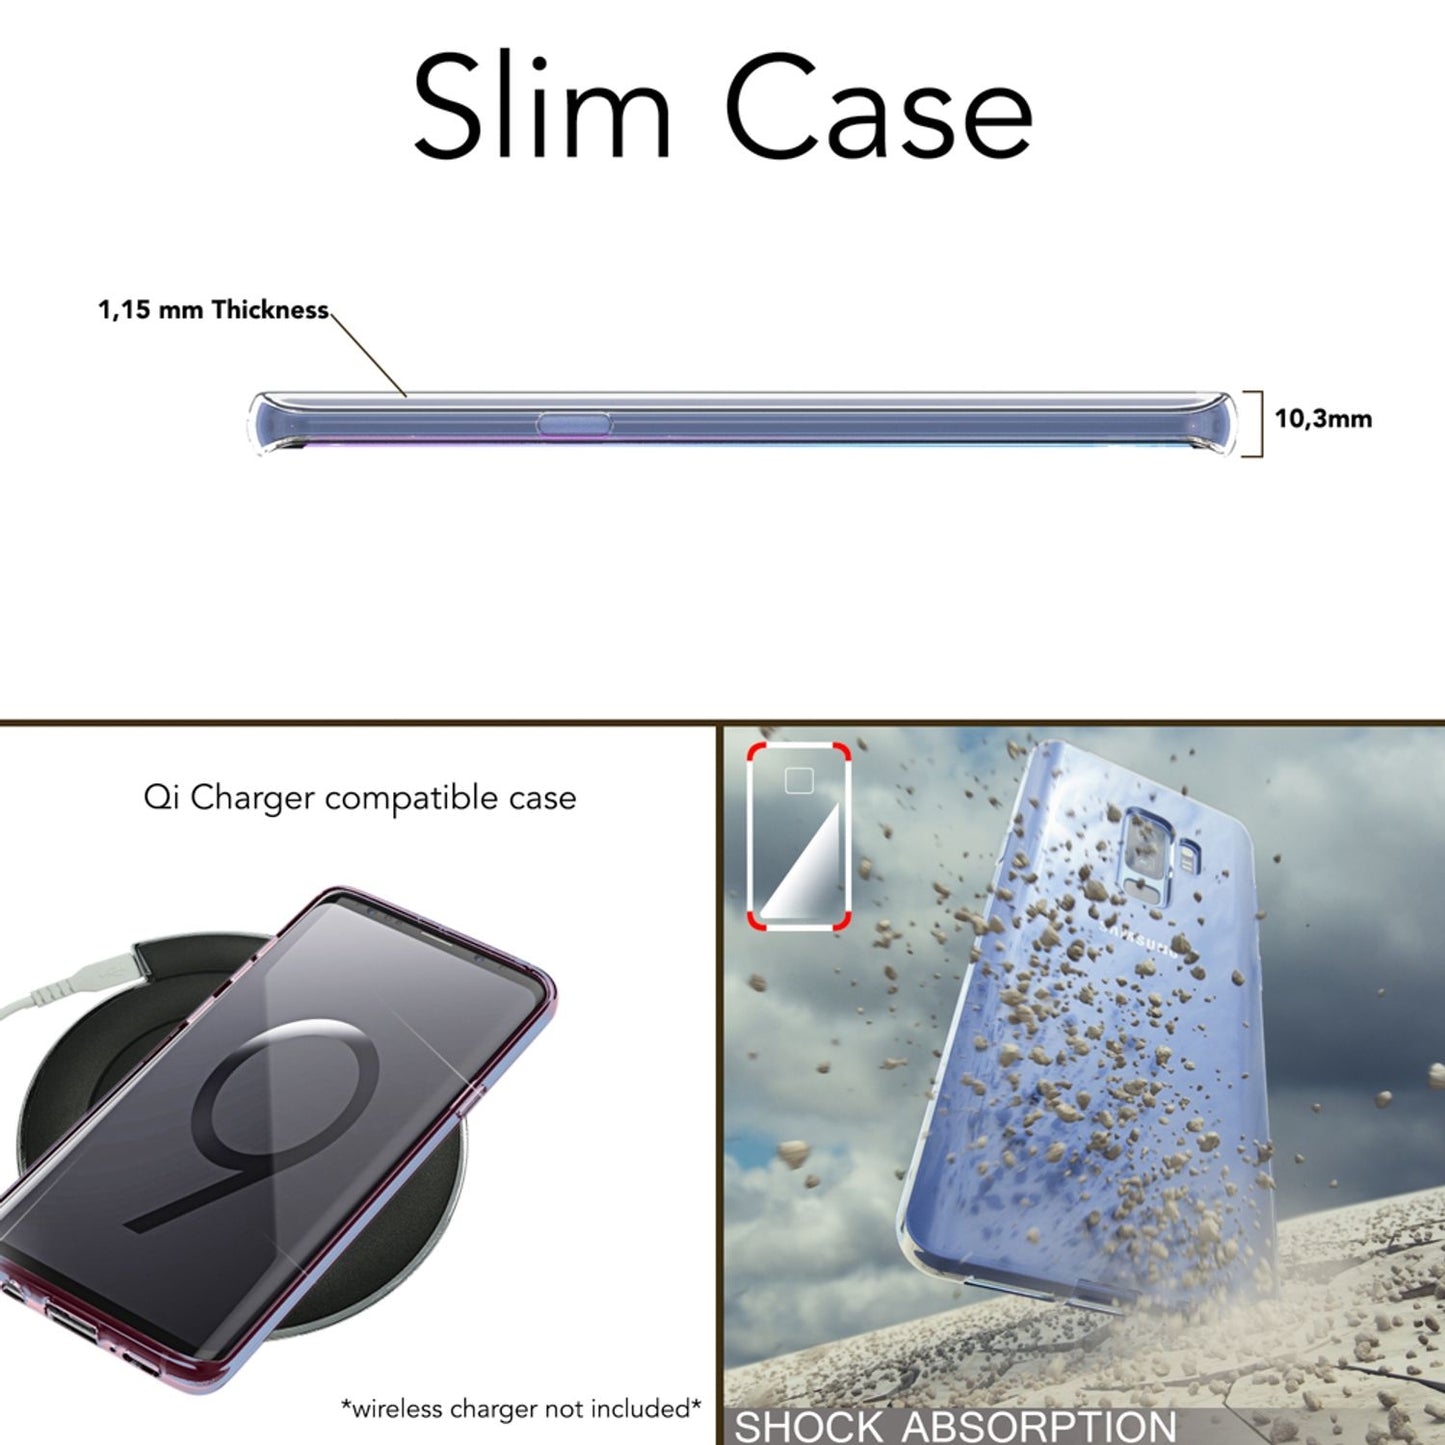 Samsung Galaxy S9 Plus Handy Hülle von NALIA, Slim Silikon Case Schutz Cover